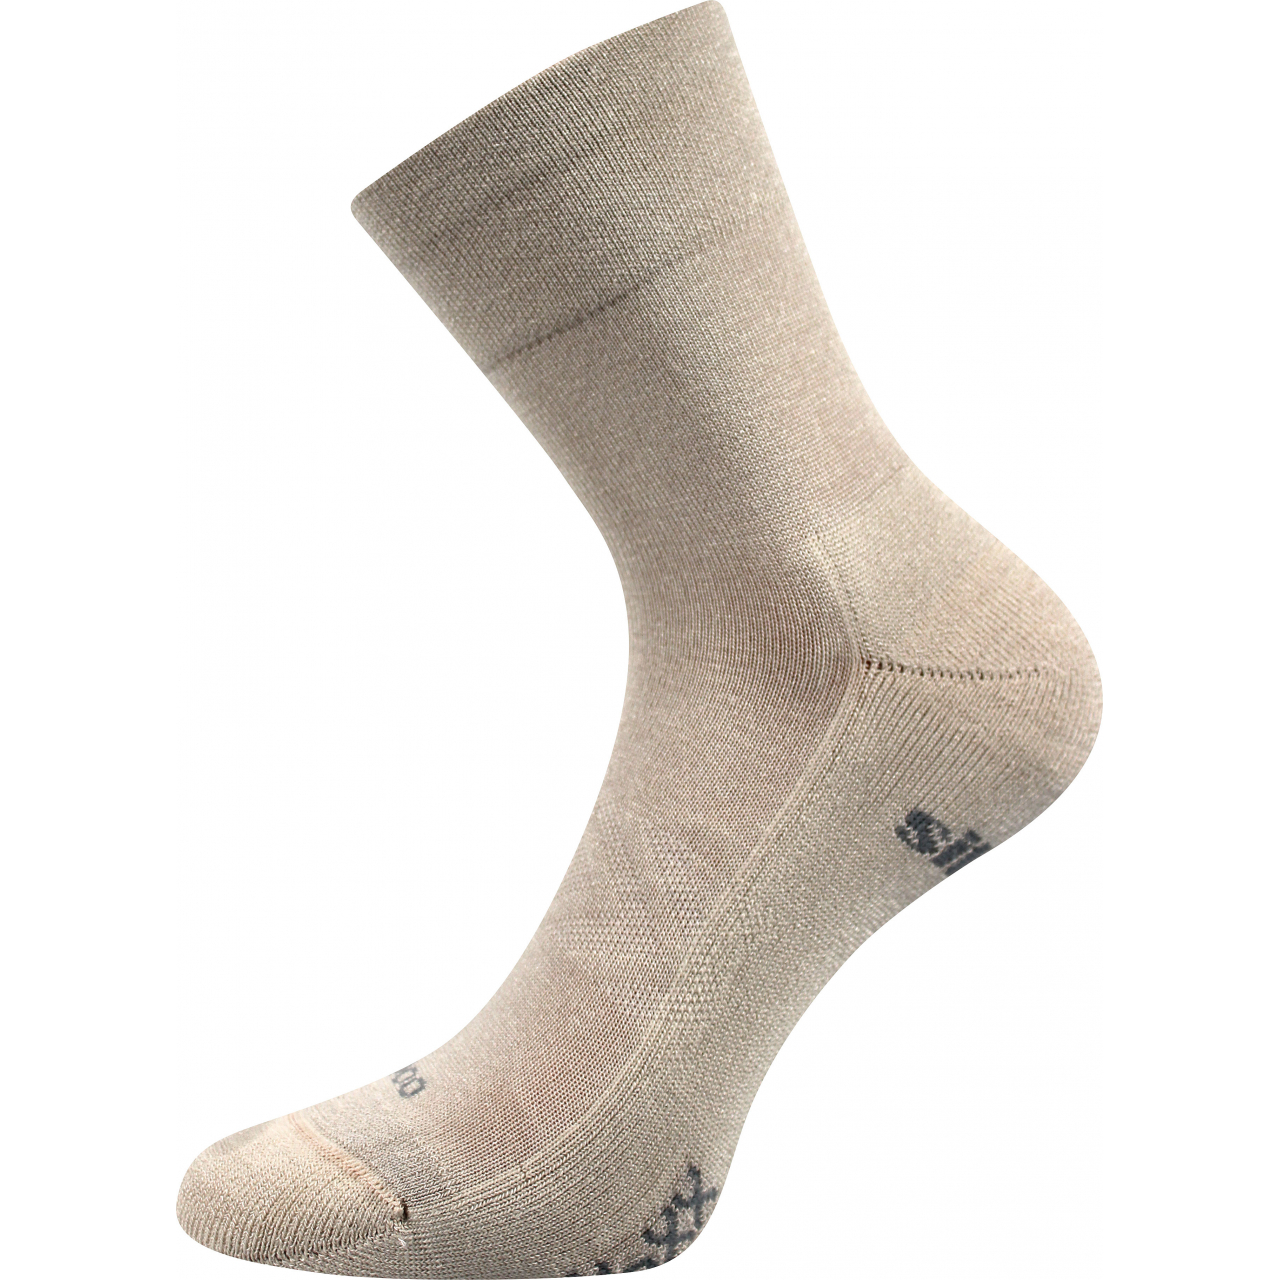 Ponožky sportovní unisex Voxx Esencis - béžové, 43-46